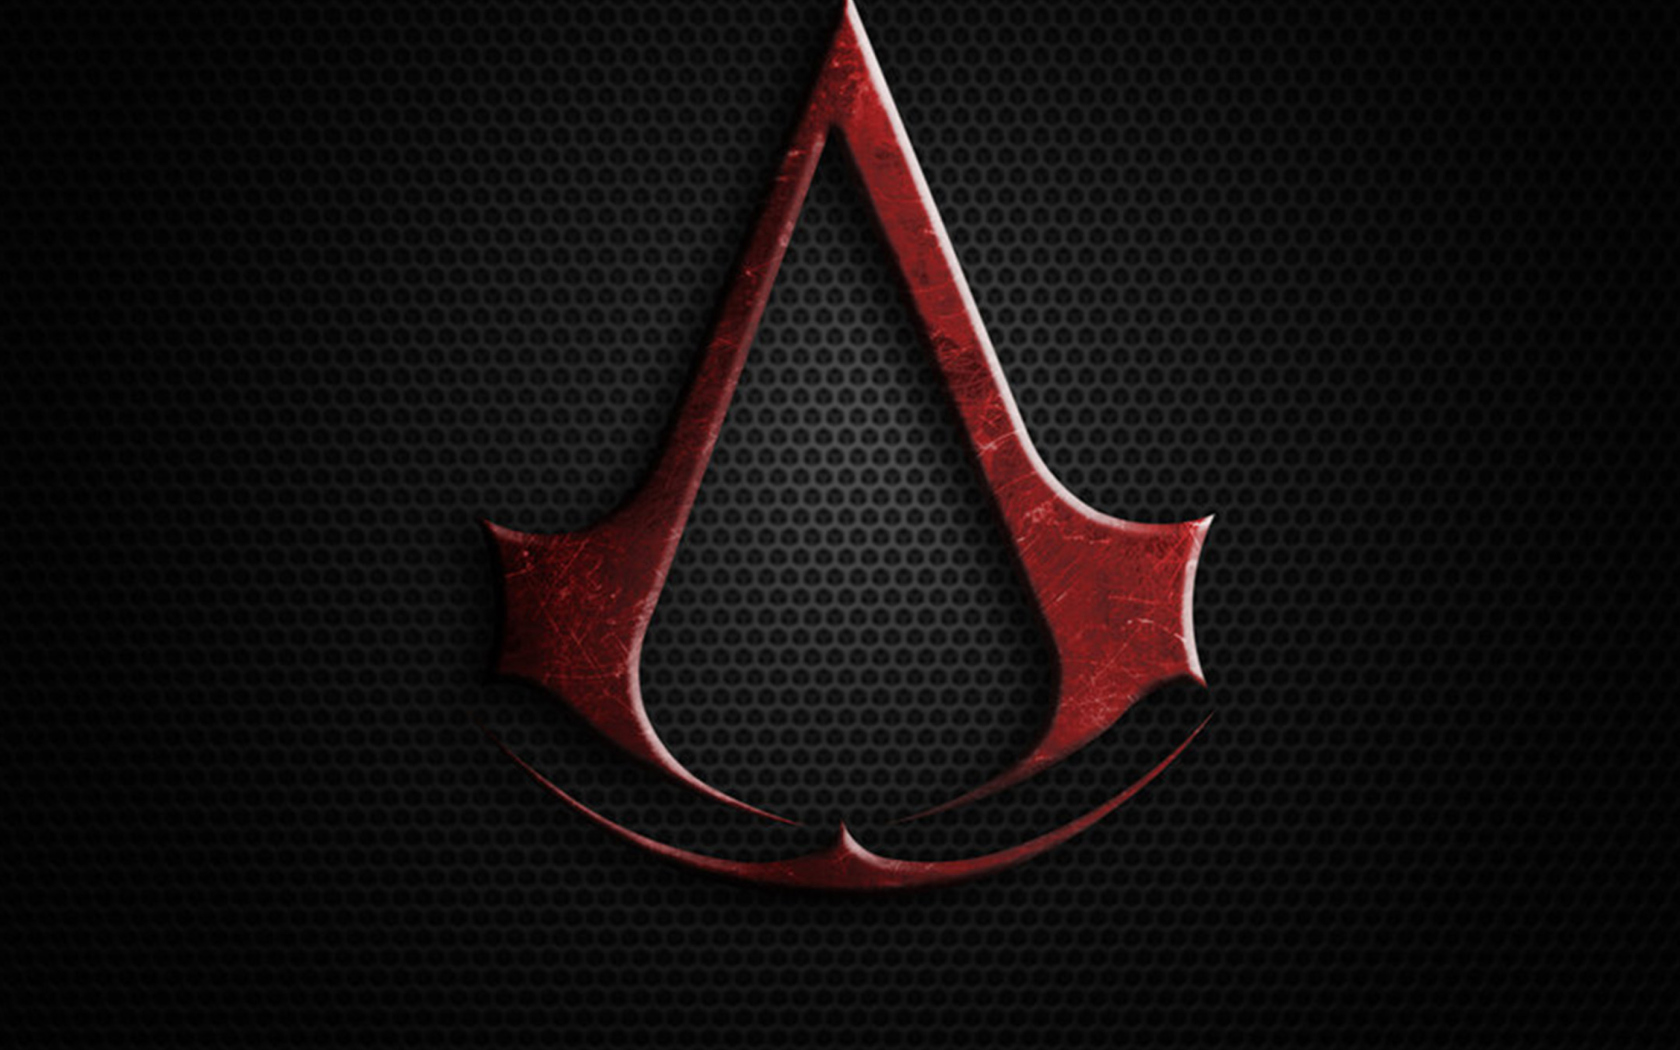 Fondo de pantalla Assassins Creed 1680x1050